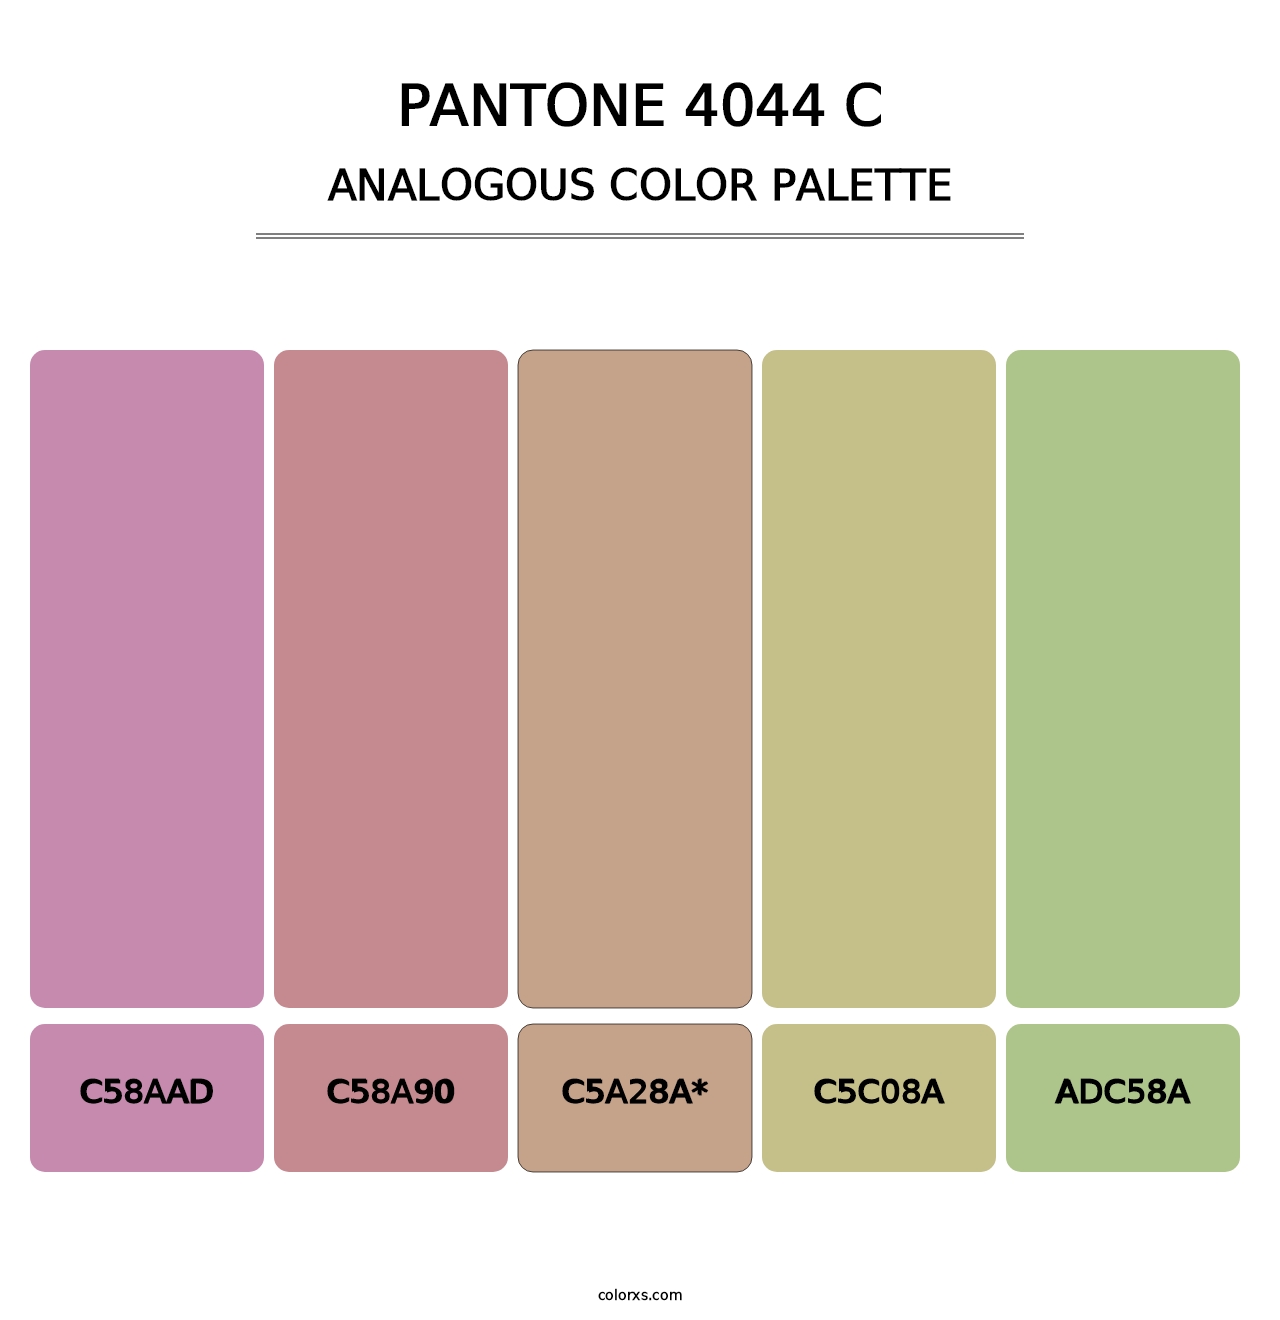 PANTONE 4044 C - Analogous Color Palette